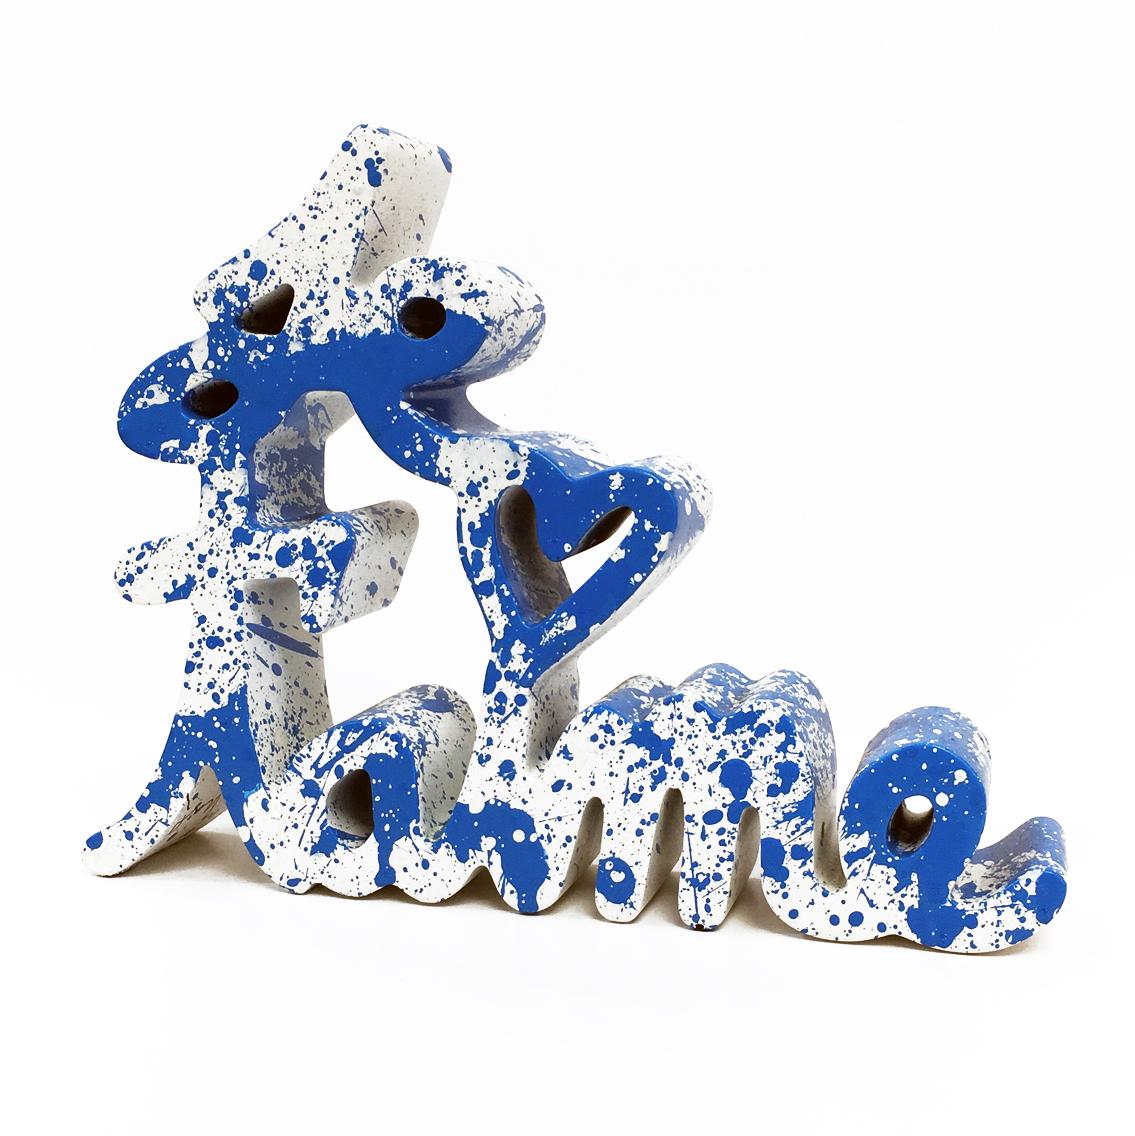 JE T'AIME – BLUE SPLASH (SculPTURE)